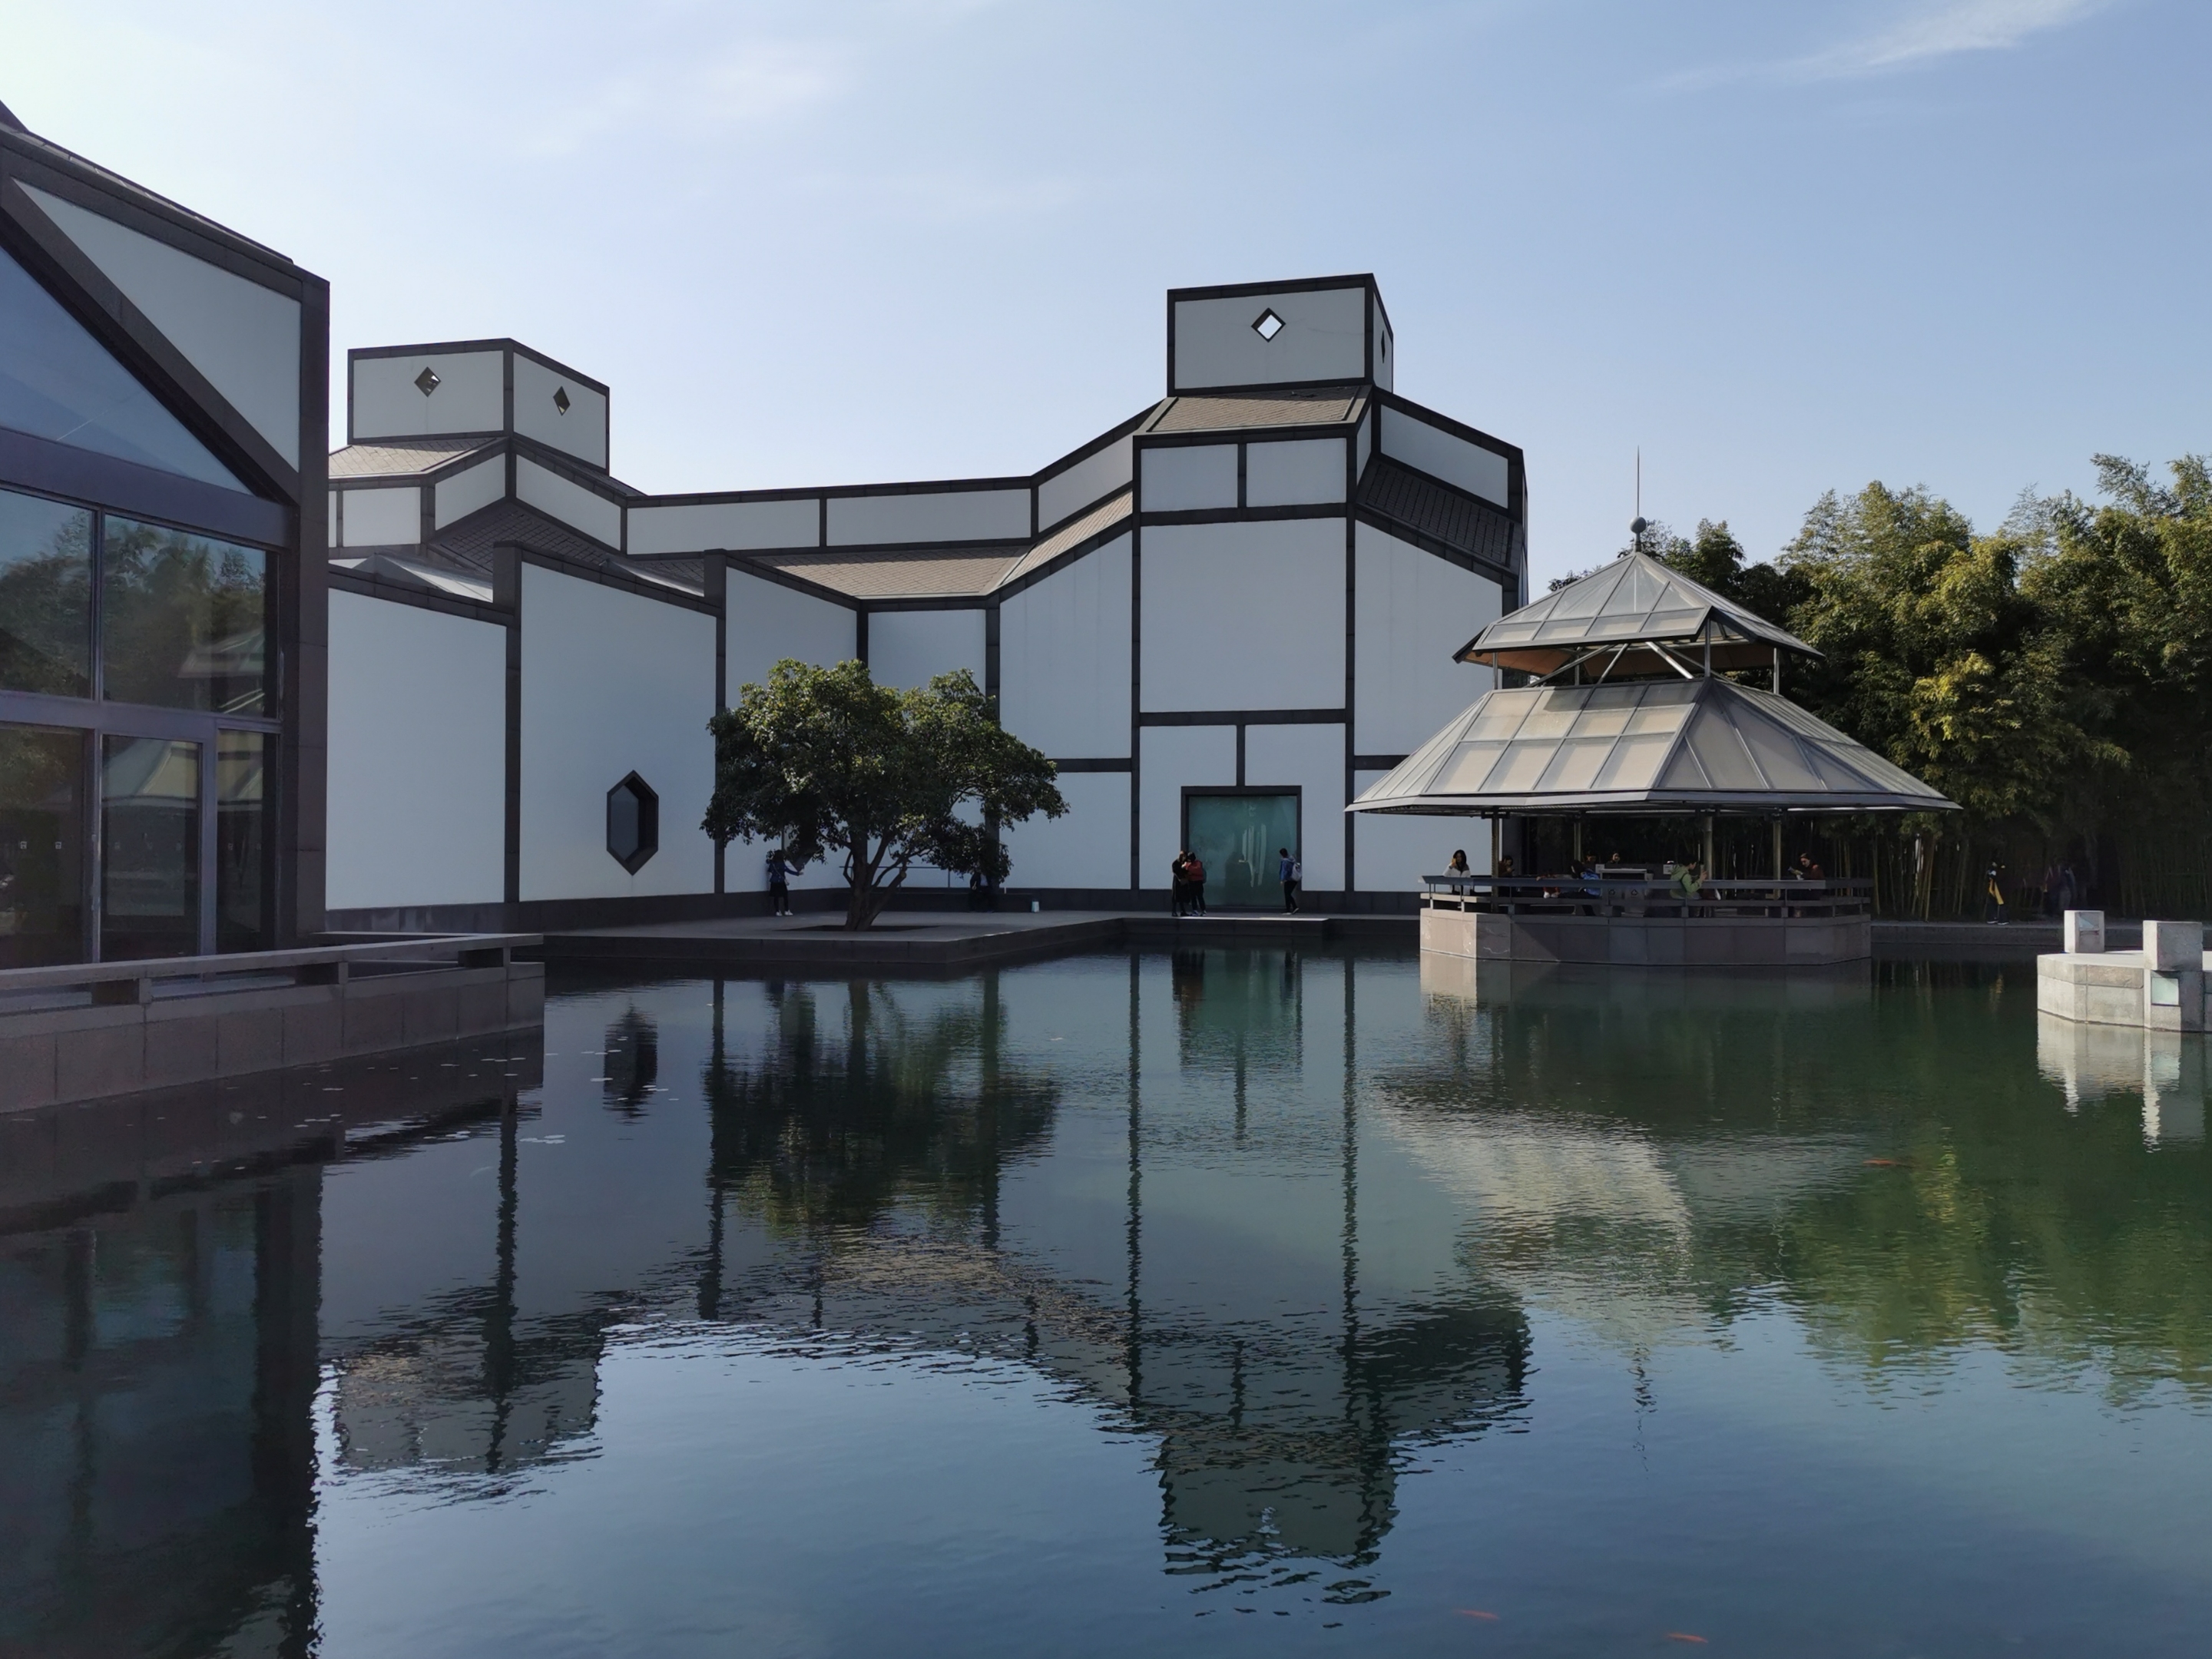 2006年10月6日,苏州博物馆新馆建成并正式对外开放.